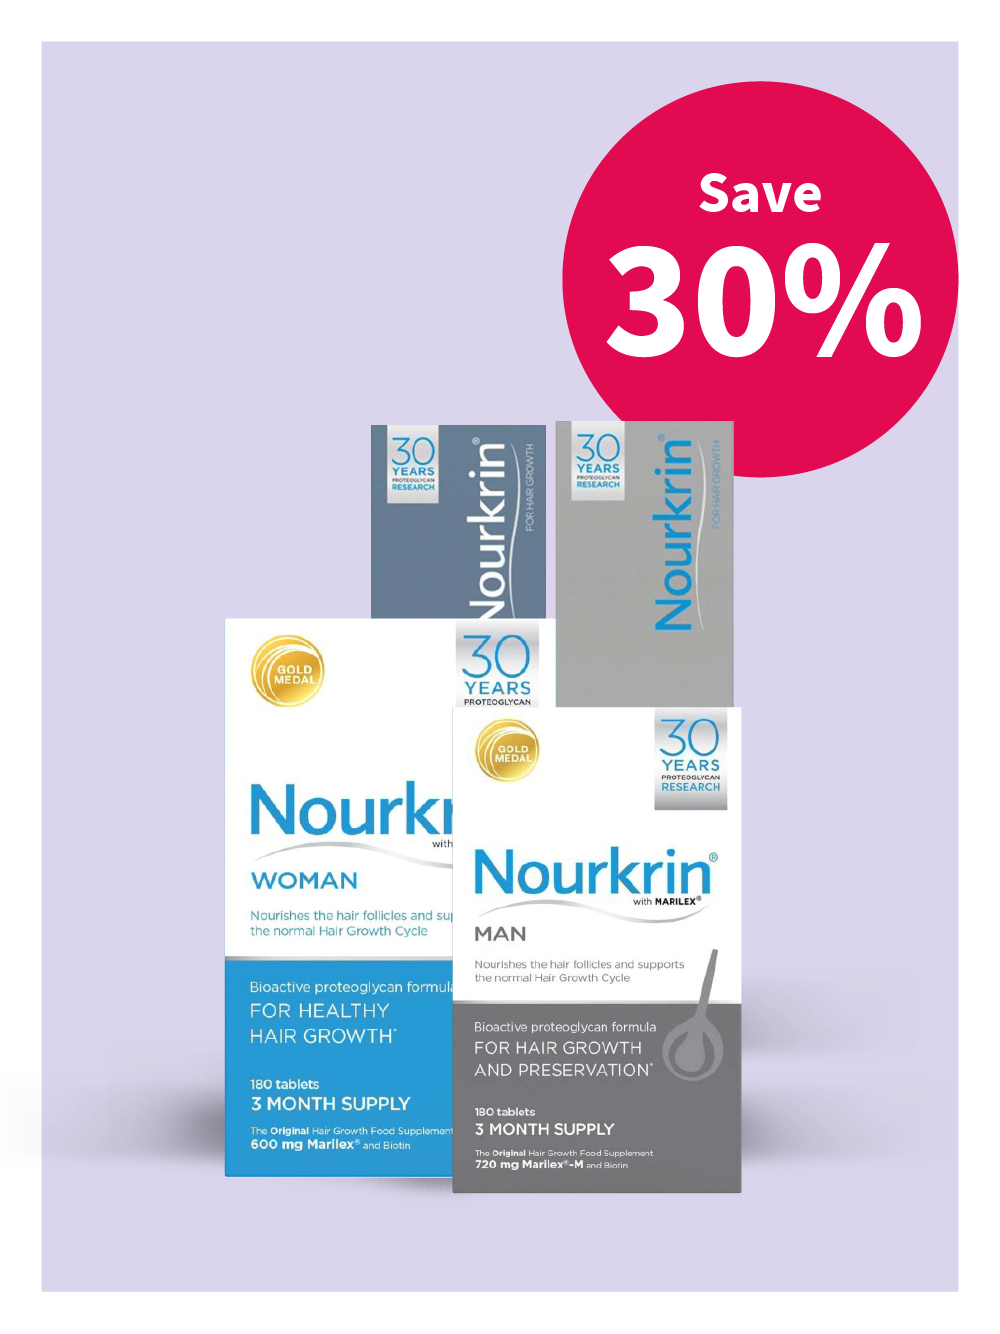 Save 30% on Nourkrin